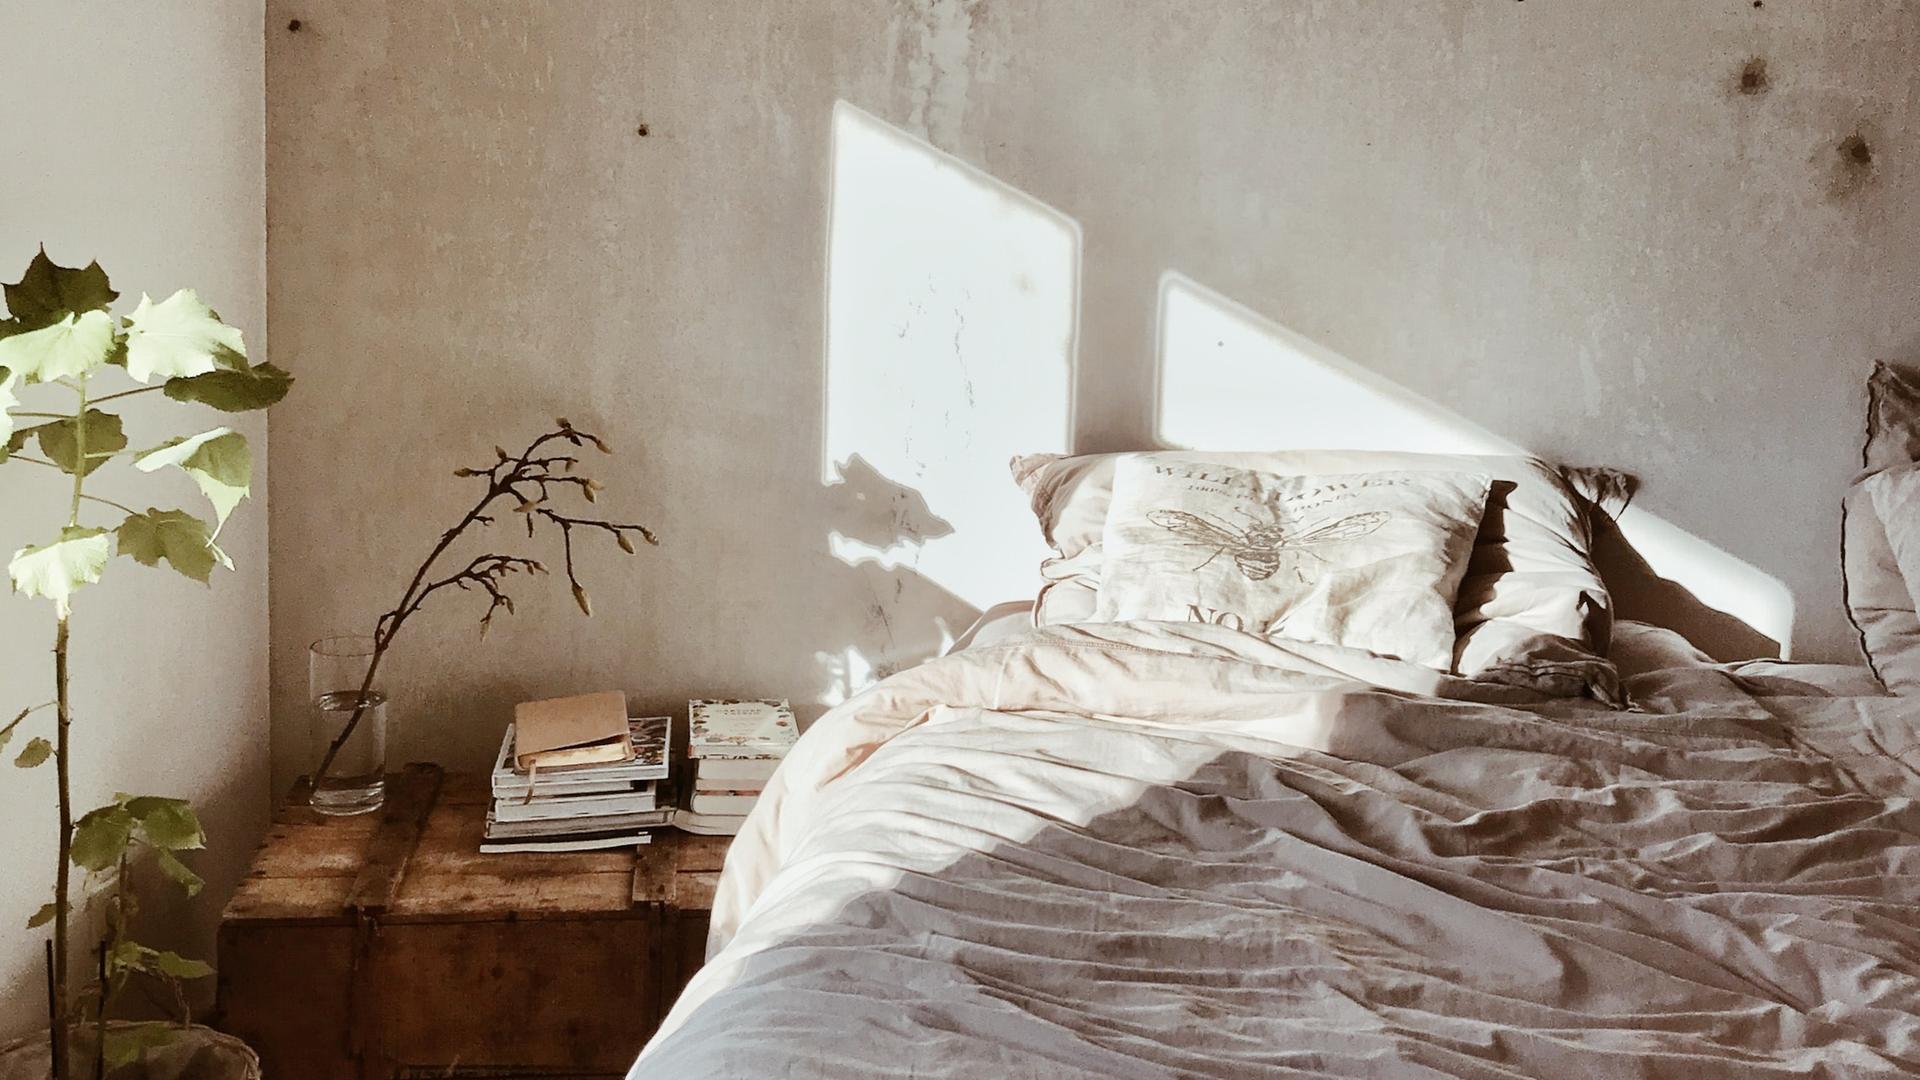 Auf ein leeres Bett vor unverputzter Wand strahlt die Sonne